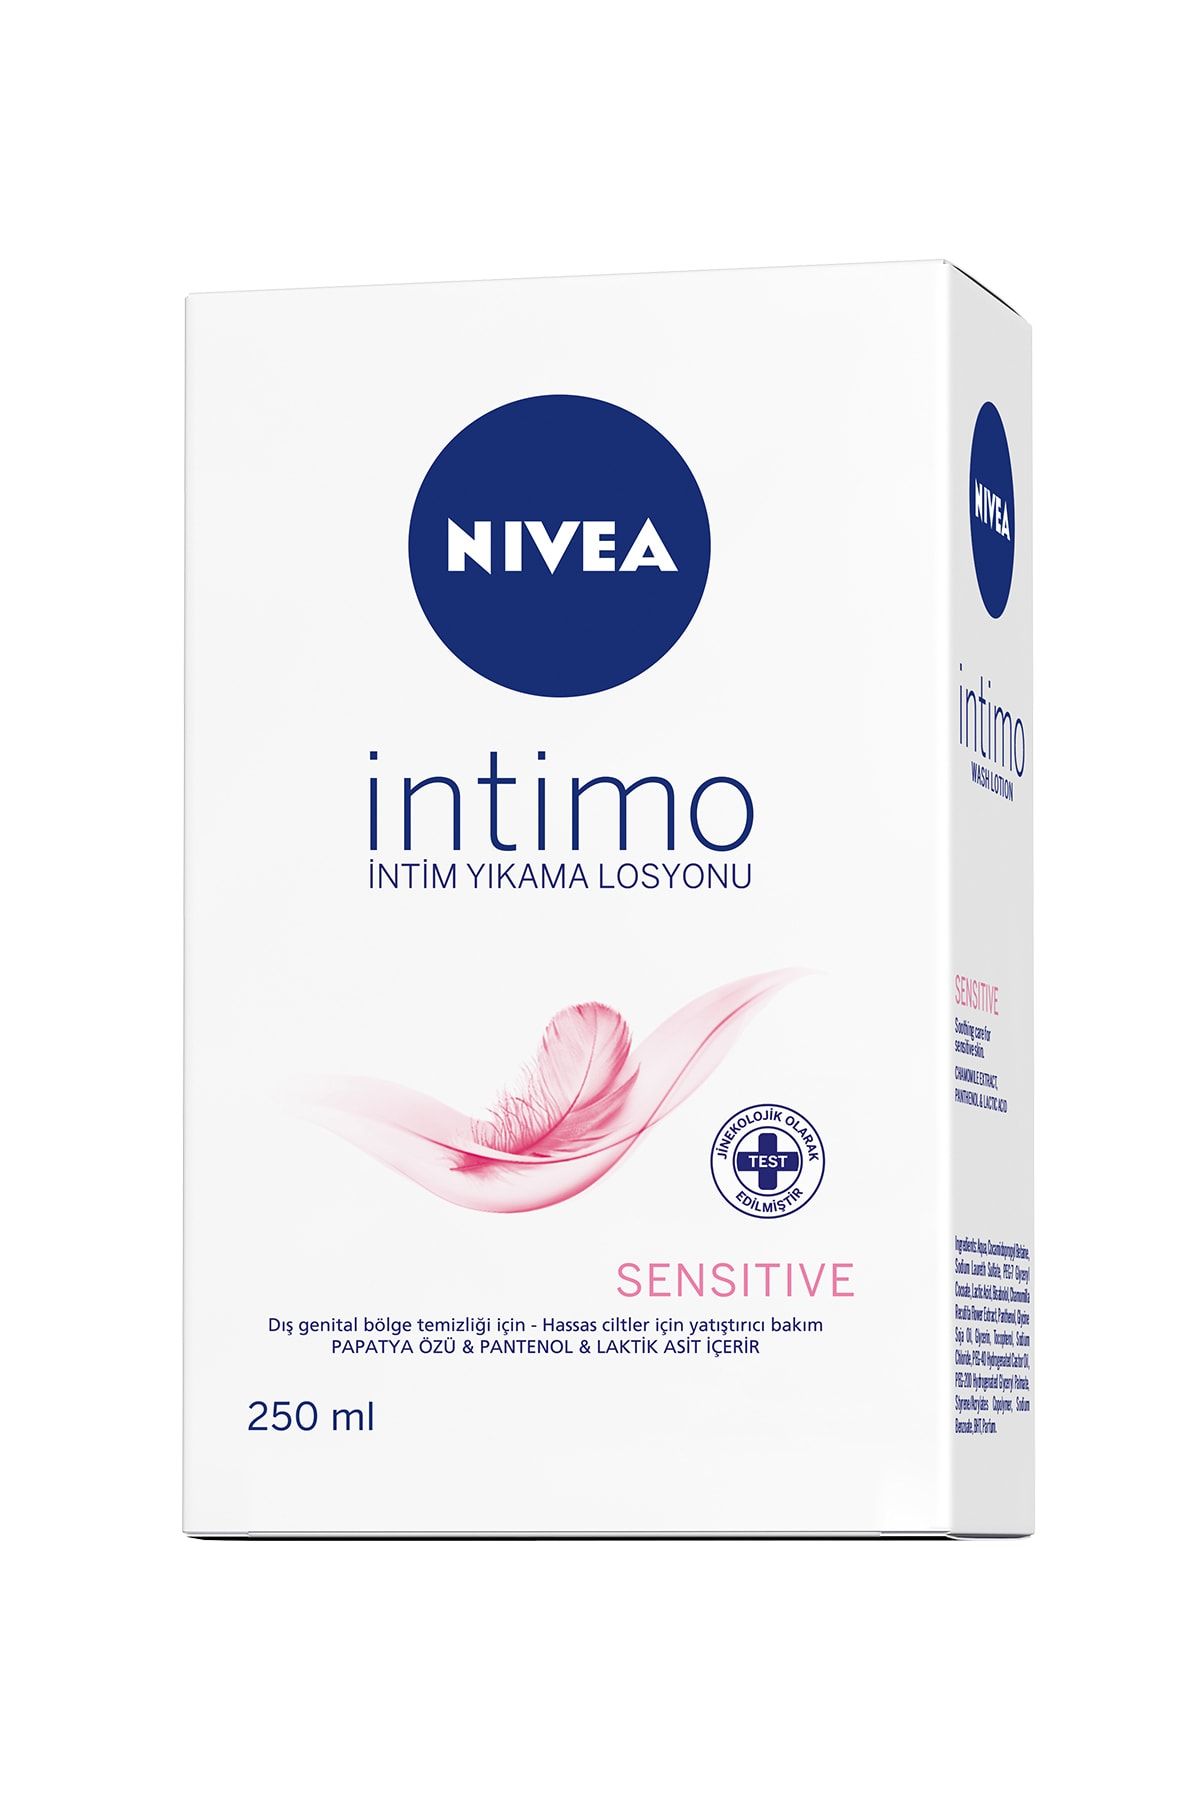 NIVEA Intimo Hassas Genital Bölge Yıkama Ve Temizleme Losyonu 250ml, Hassas Cilt, Alkali Sabun Içermez